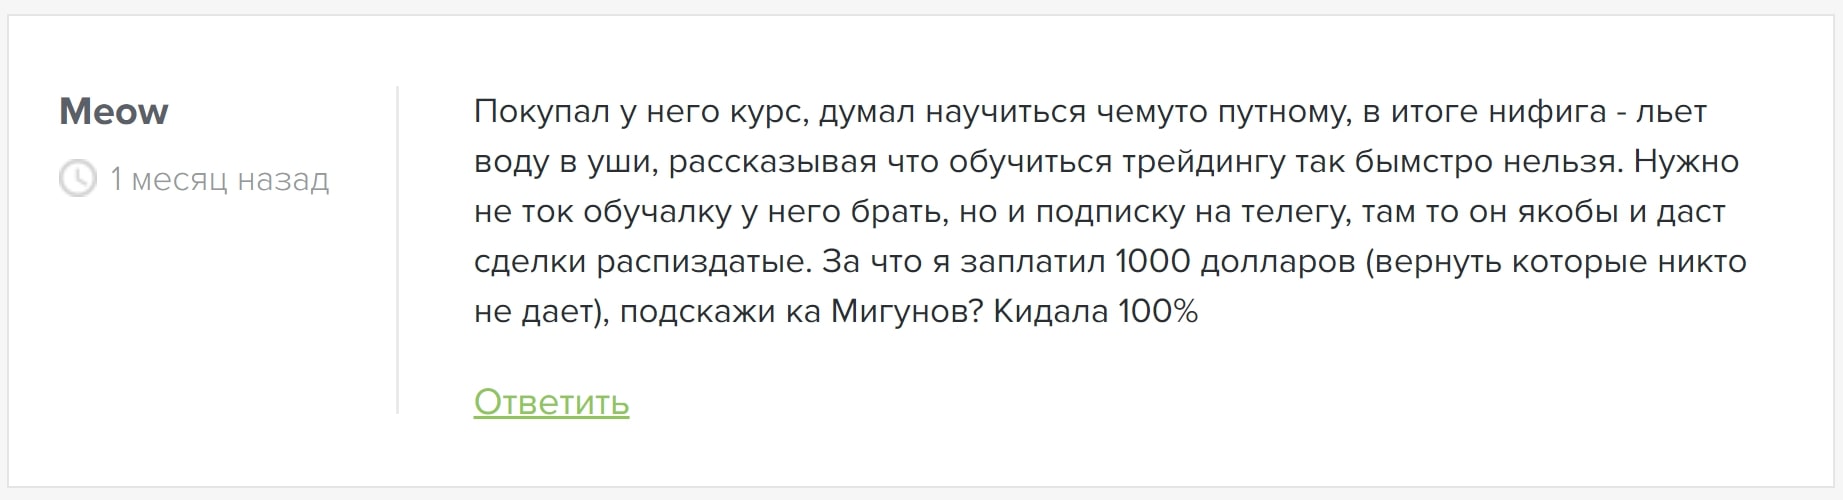 Дмитрий Мигунов отзывы